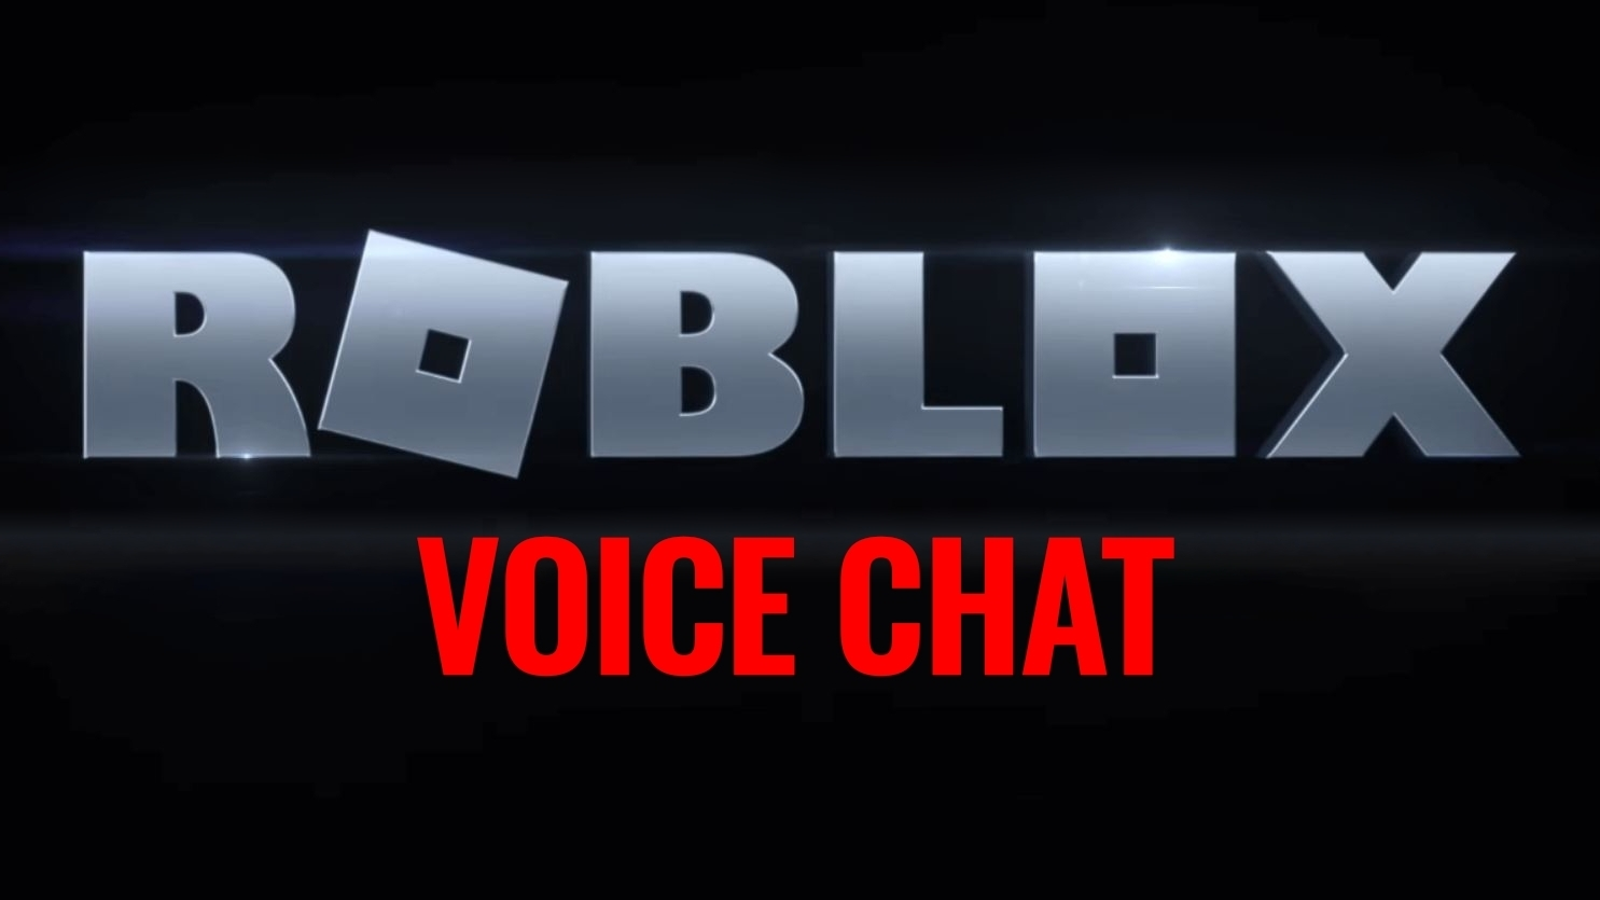 Como ativar chat de voz no Roblox pelo PC e celular